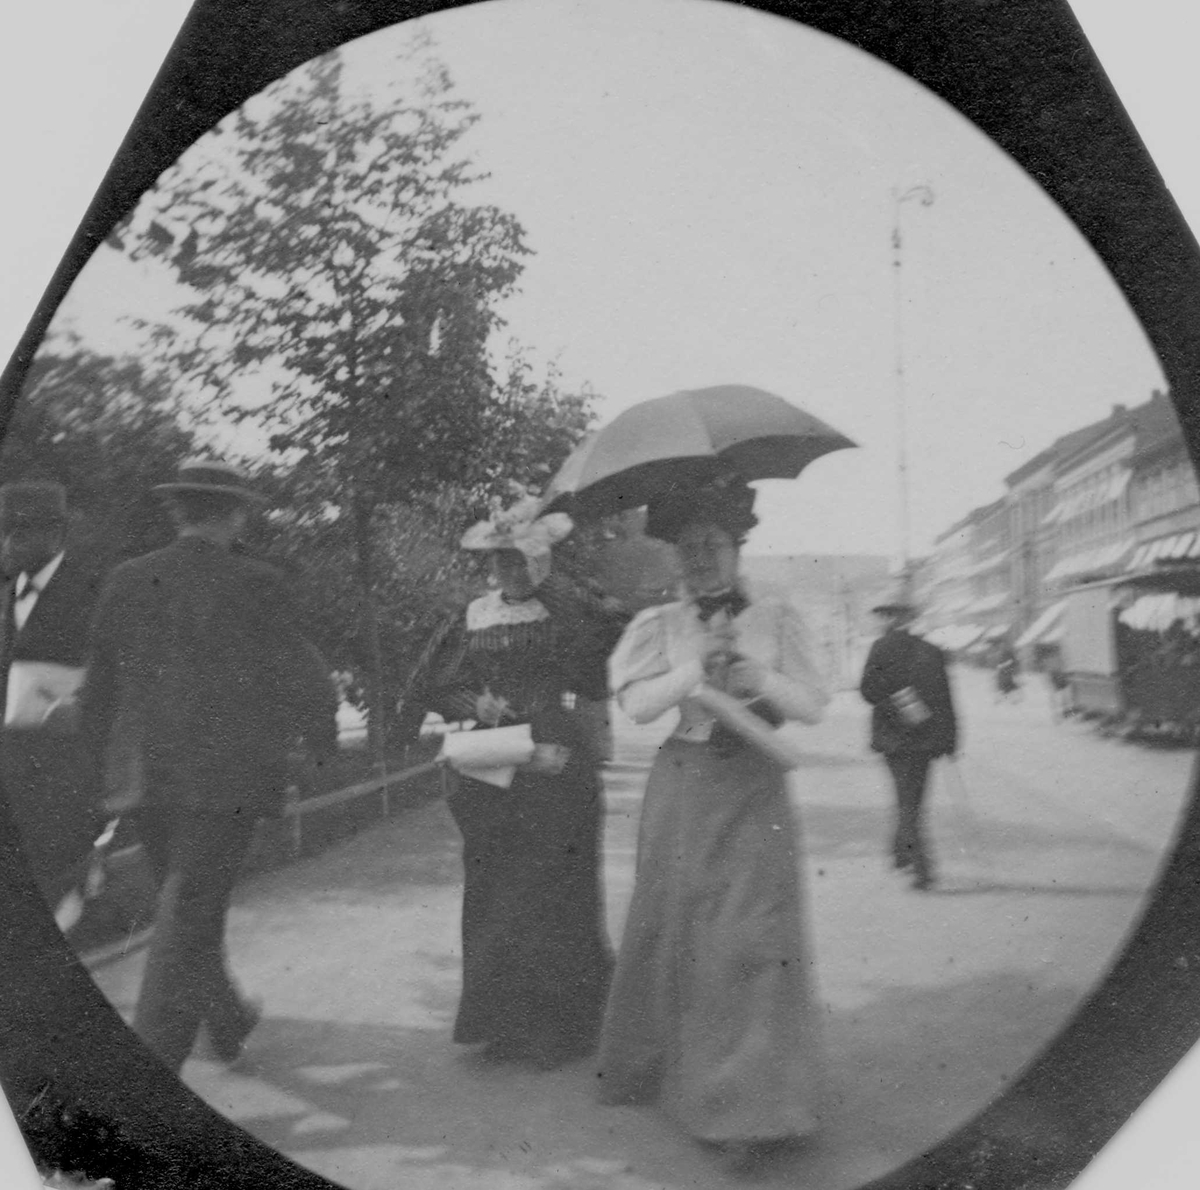 Mennesker spaserer på Karl Johans gate, Oslo. Kvinne med hvit jakke og paraply fremst i bildet.